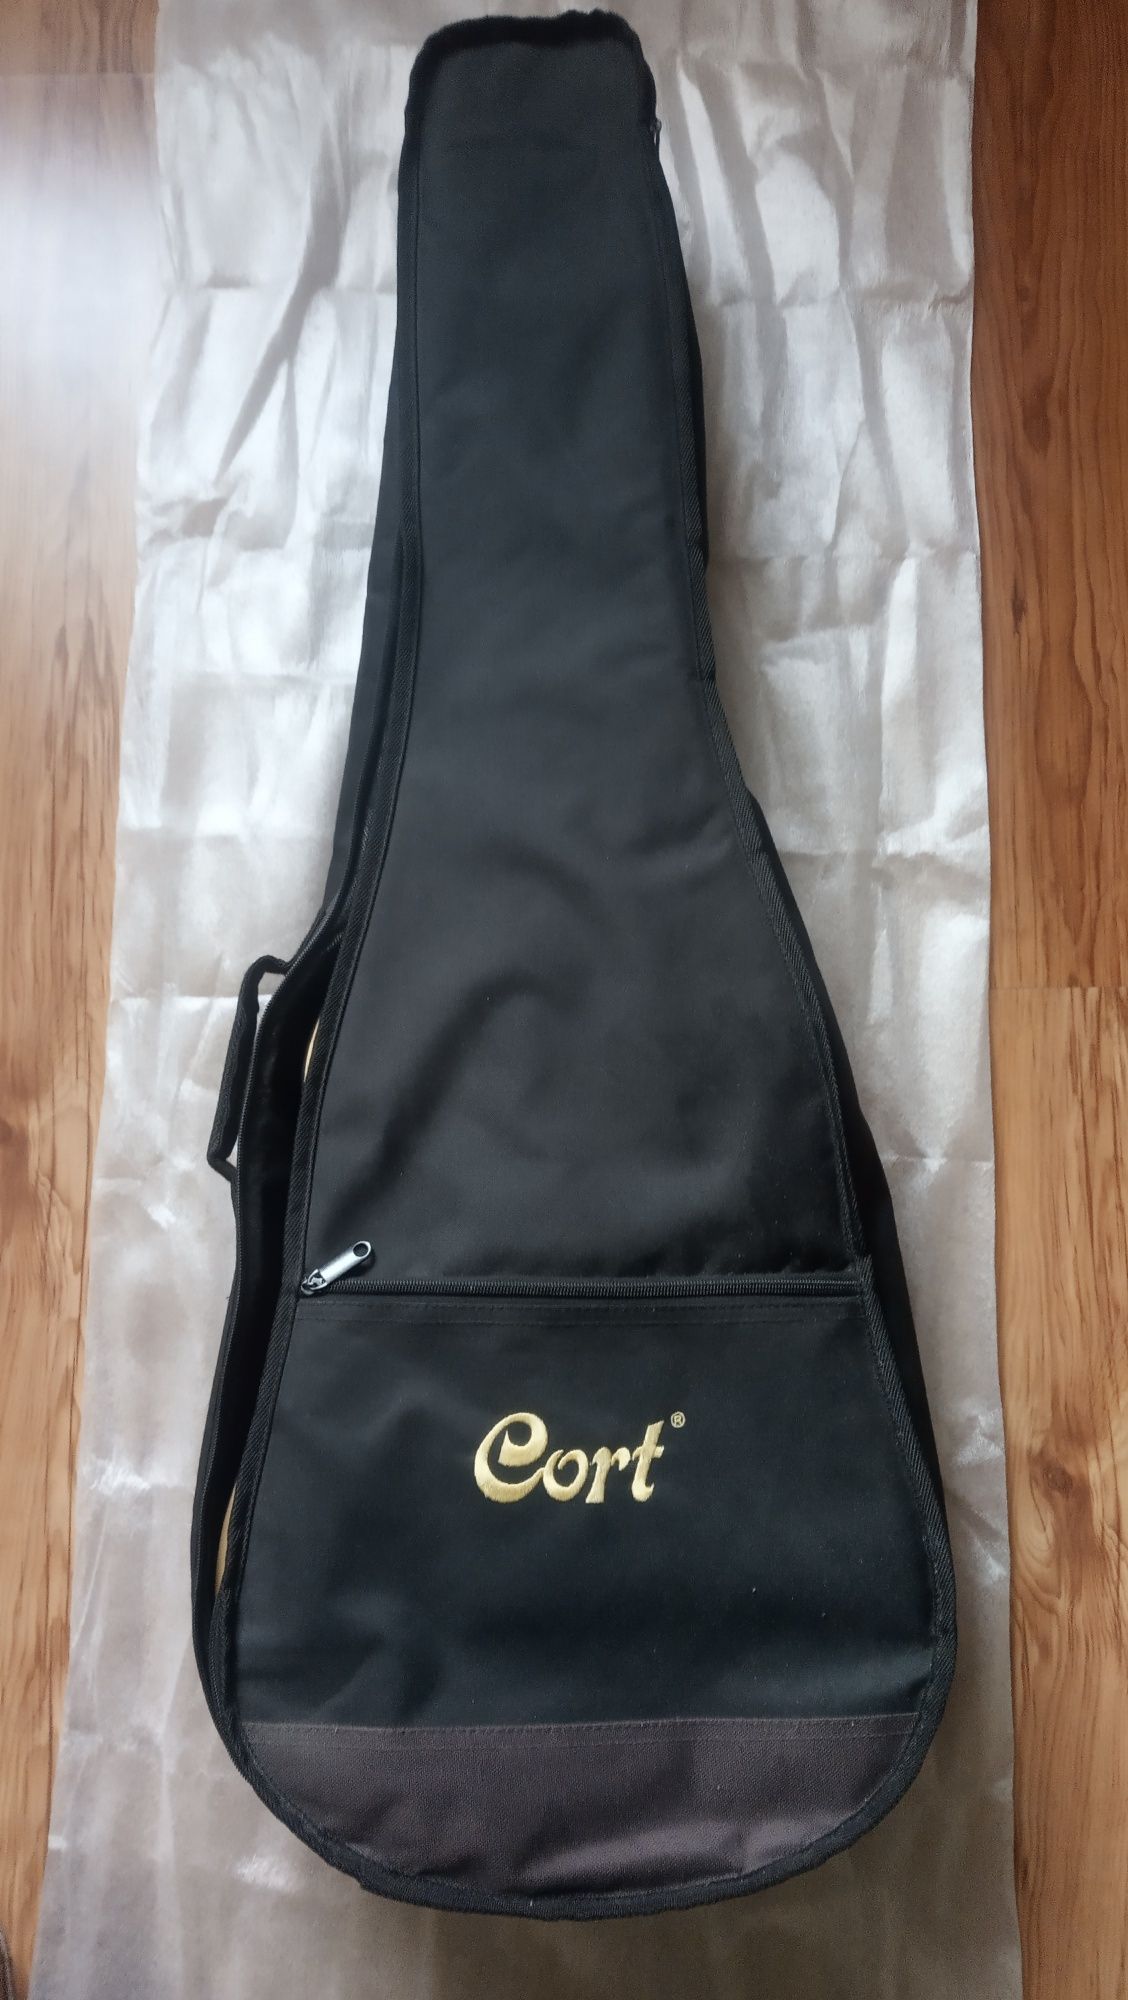 Класична гітара 3/4 CORT AC70,  стан нової. З фірмовим чохлом